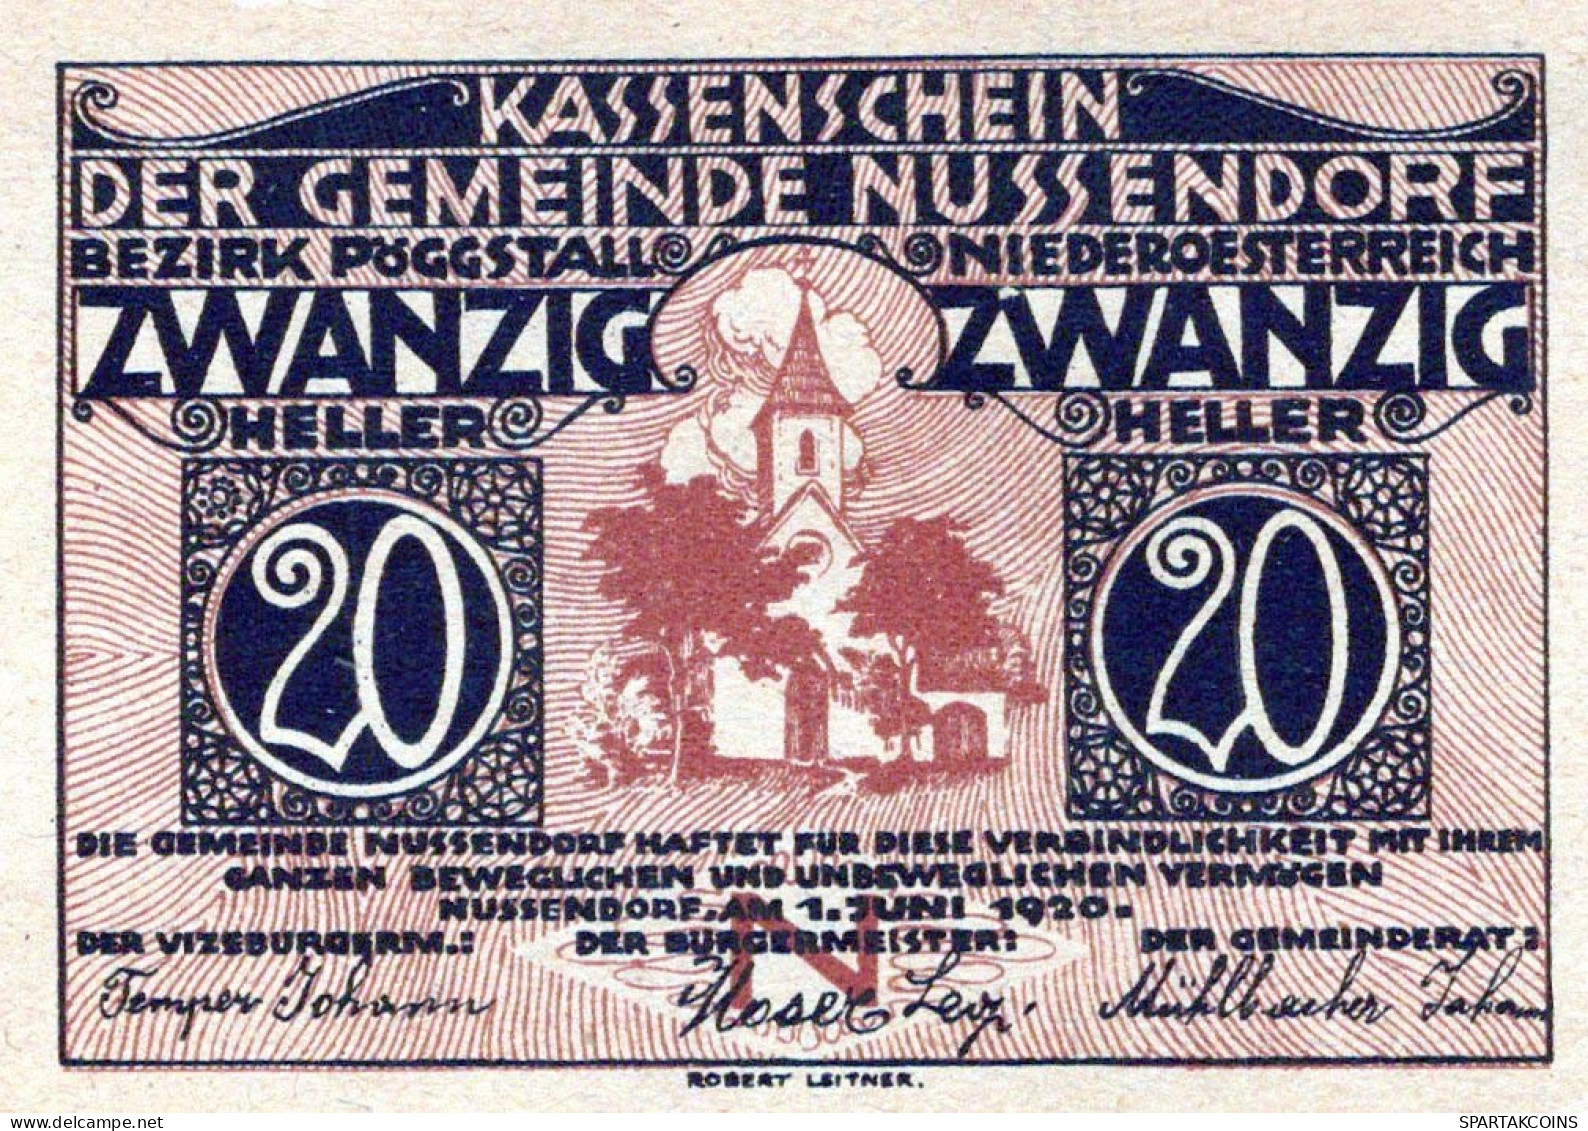 20 HELLER 1920 Stadt NUSSENDORF-ARTSTETTEN Niedrigeren Österreich Notgeld Papiergeld Banknote #PG640 - [11] Local Banknote Issues